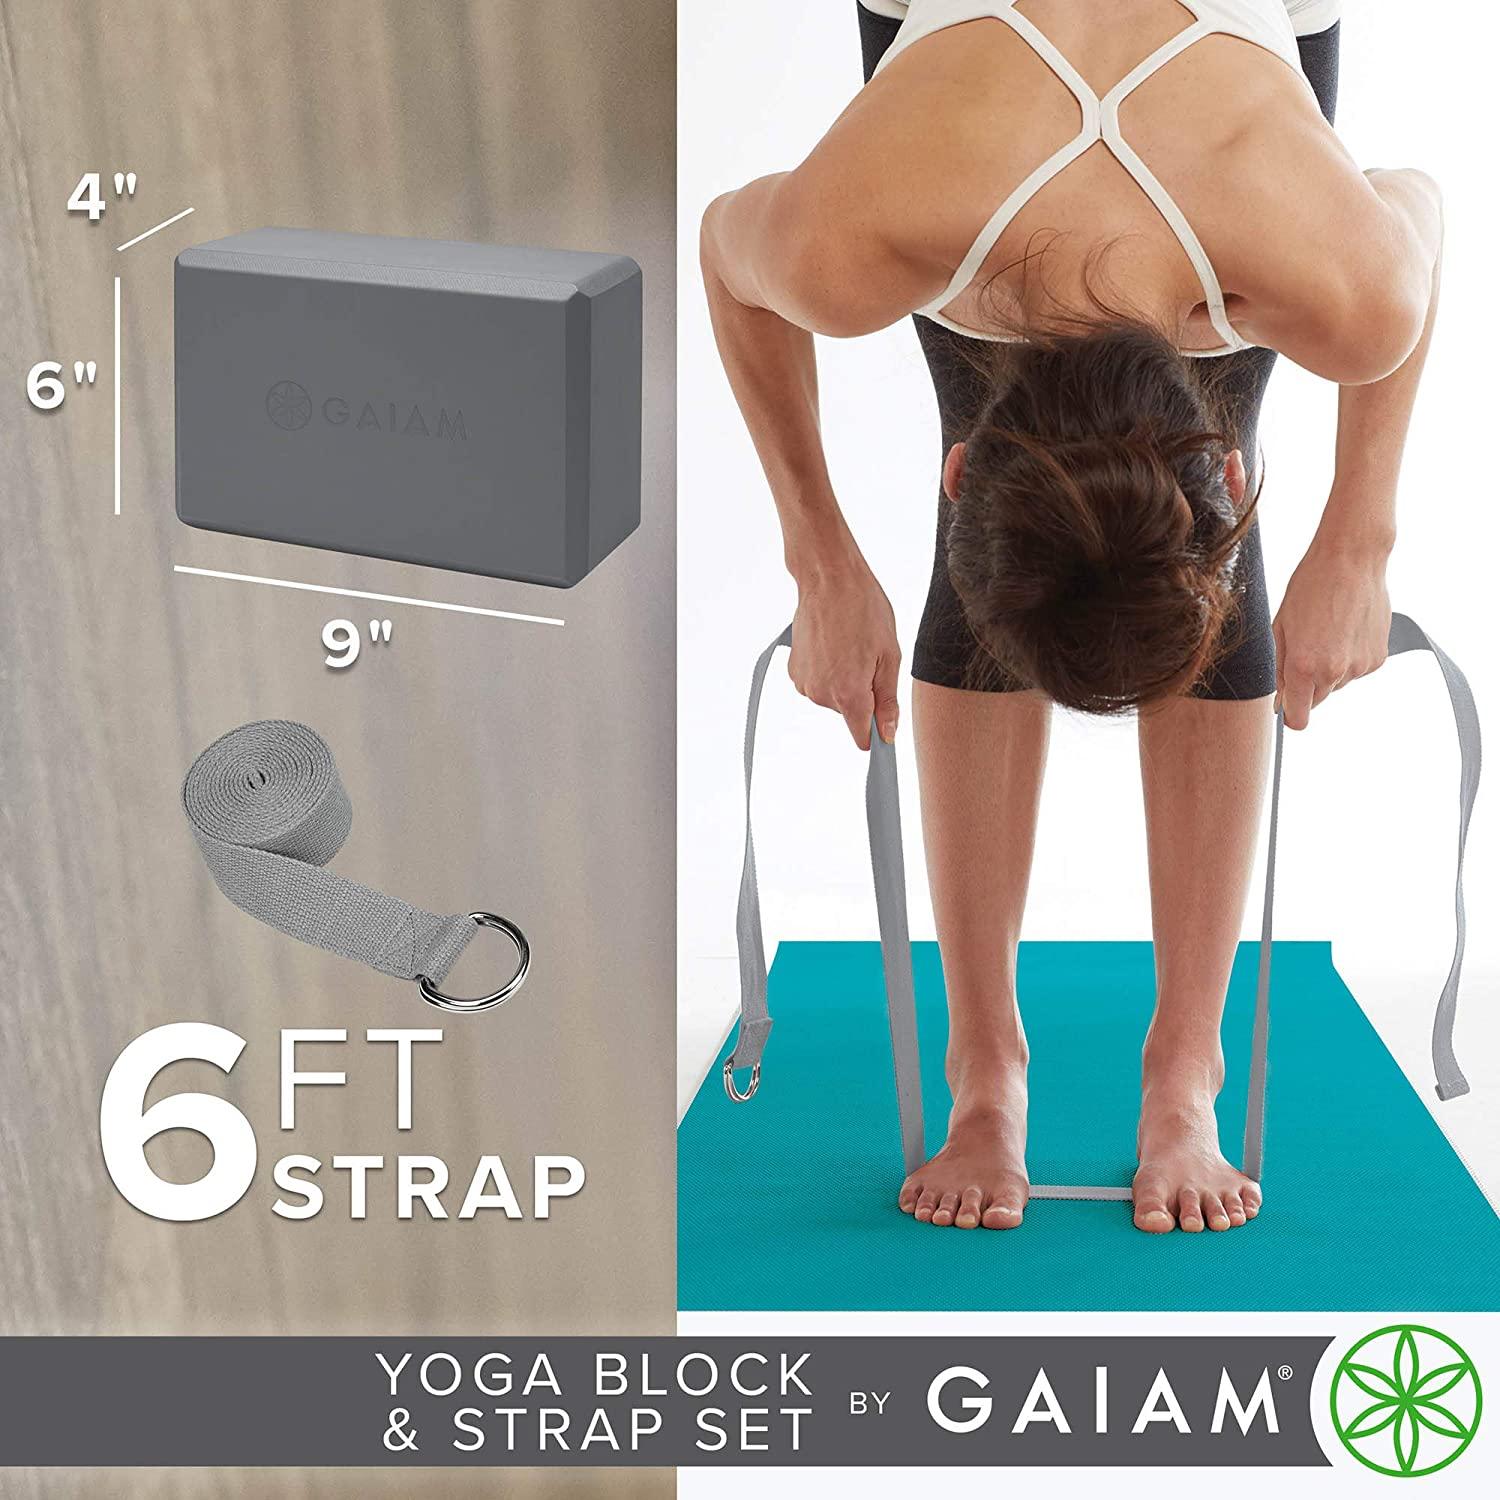 Gaiam 6-Feet Yoga Strap